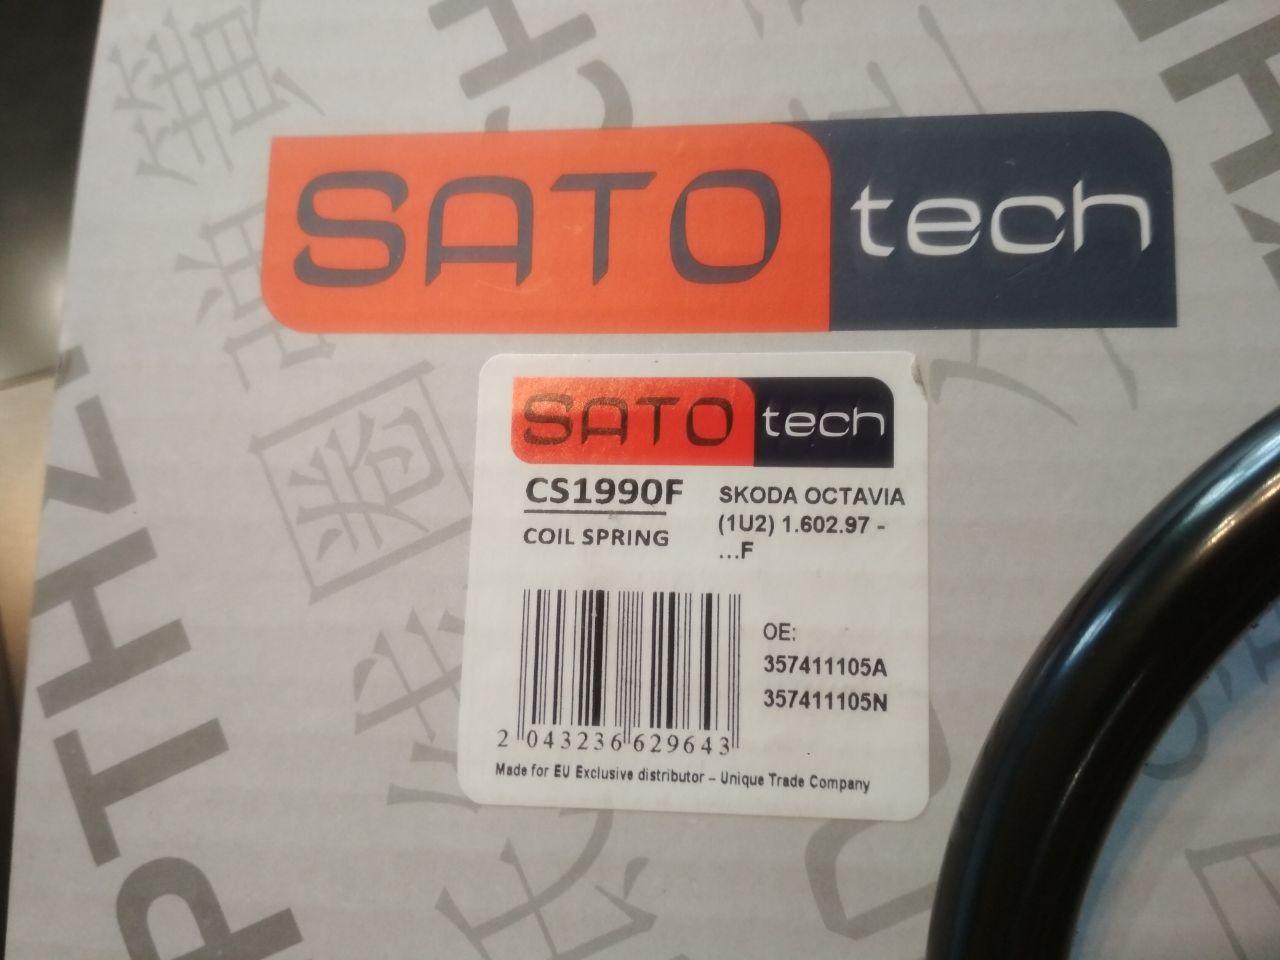  Sato tech